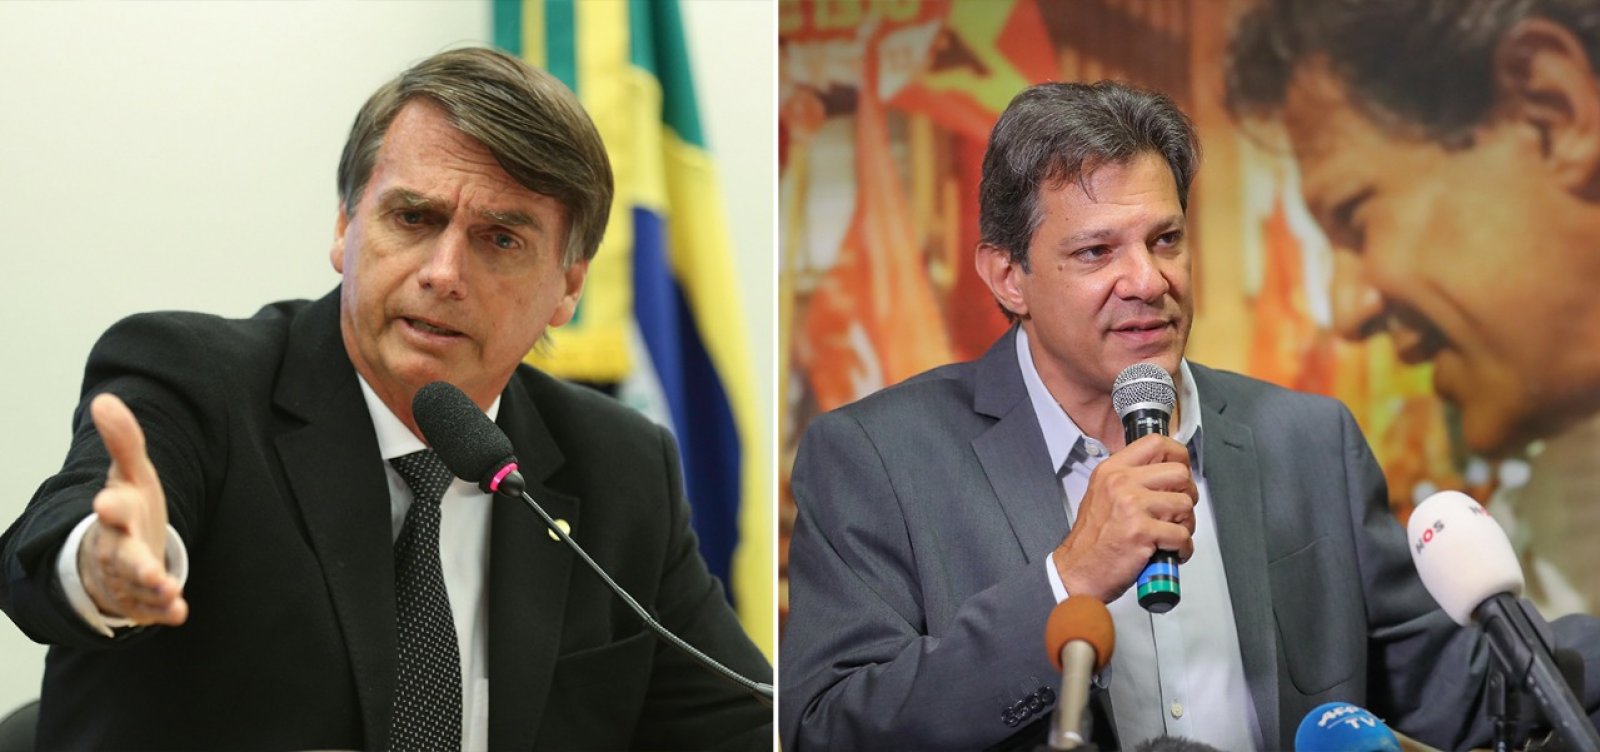 Datafolha: Eleitores votam em Bolsonaro por renovação; em Haddad por rejeição a Bolsonaro